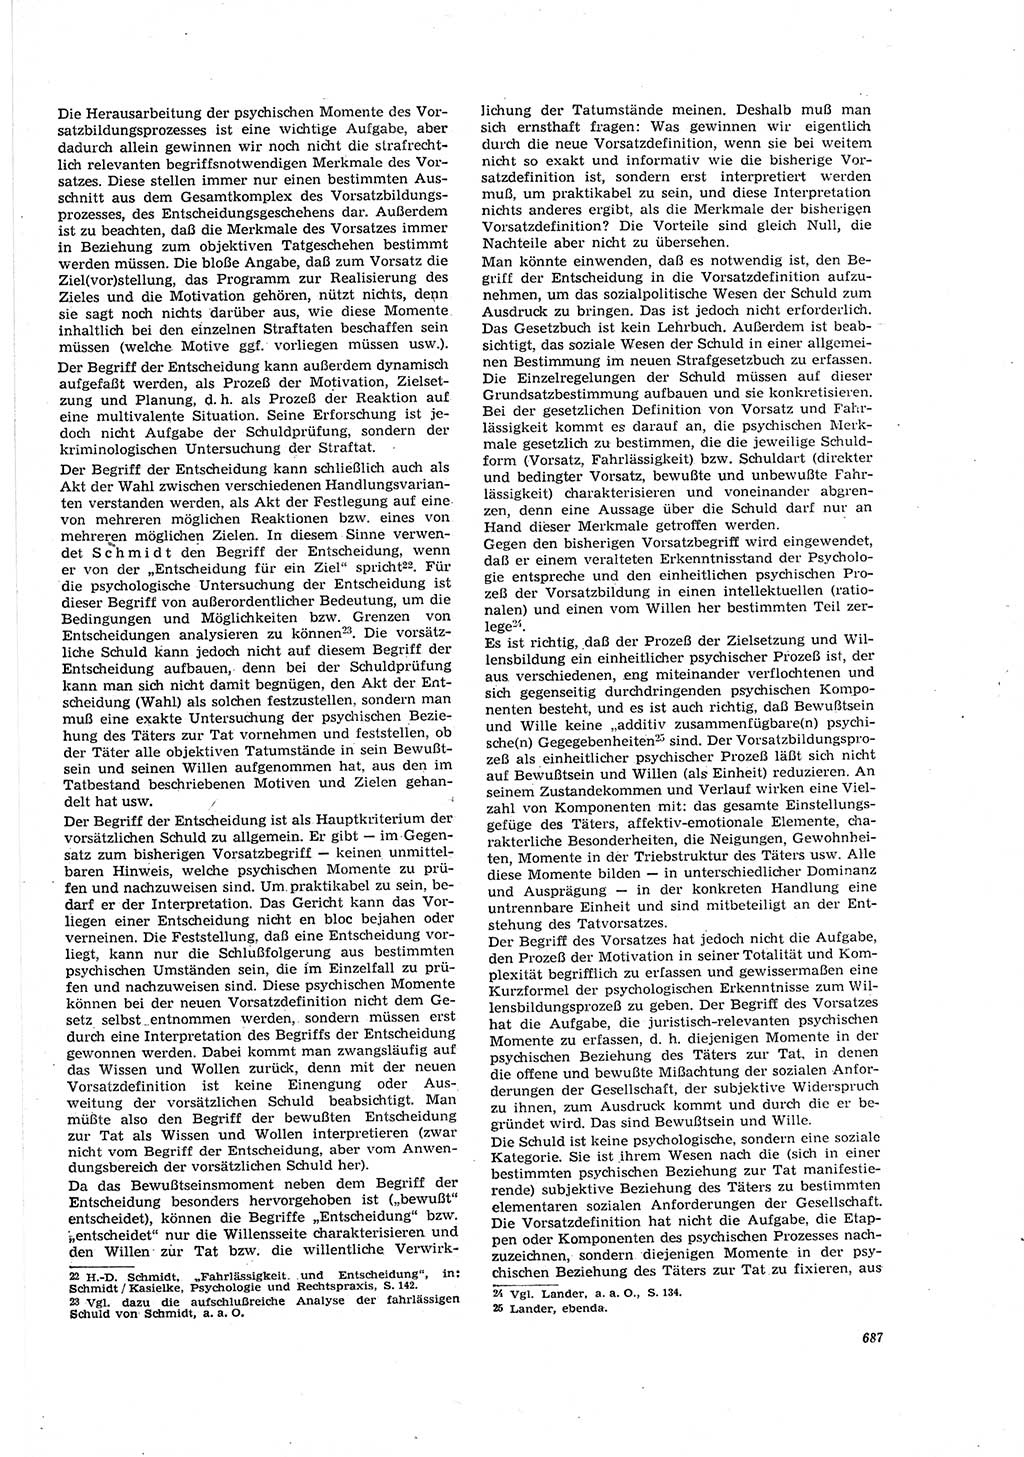 Neue Justiz (NJ), Zeitschrift für Recht und Rechtswissenschaft [Deutsche Demokratische Republik (DDR)], 20. Jahrgang 1966, Seite 687 (NJ DDR 1966, S. 687)